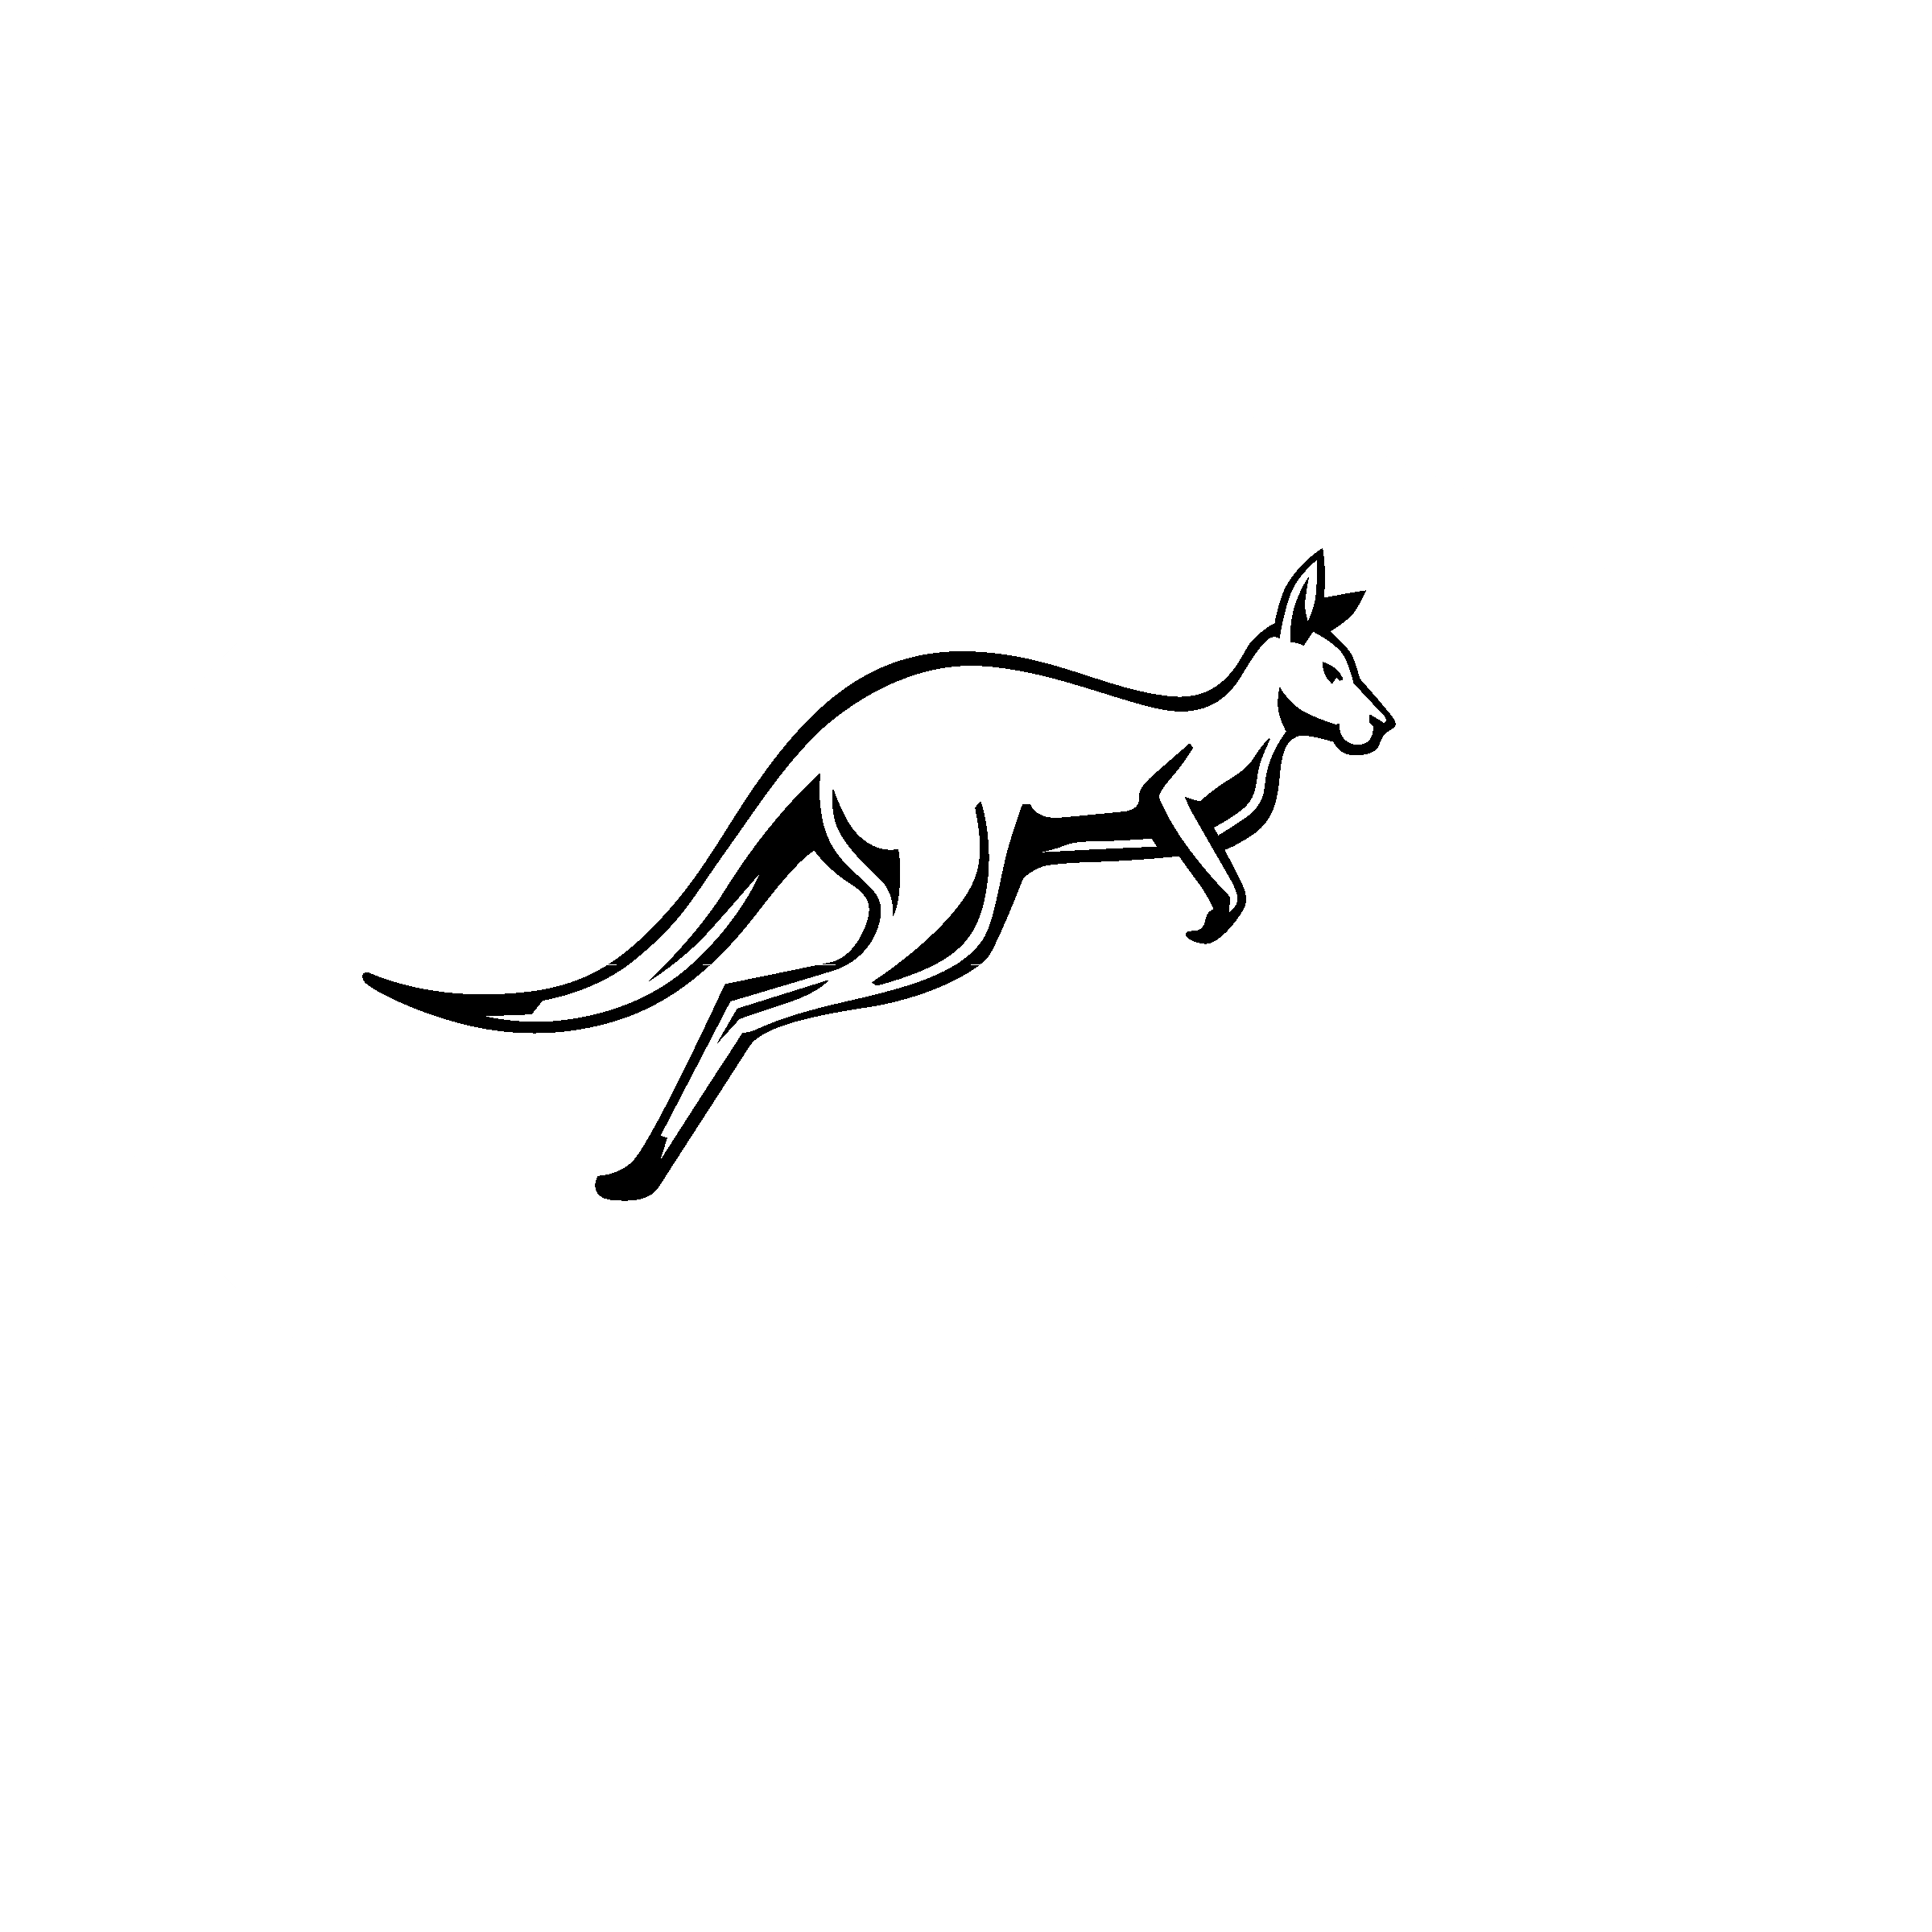 Black and White Kangaroo Logo - Red Kangaroo Service Logo PNG Transparent & SVG Vector - Freebie Supply